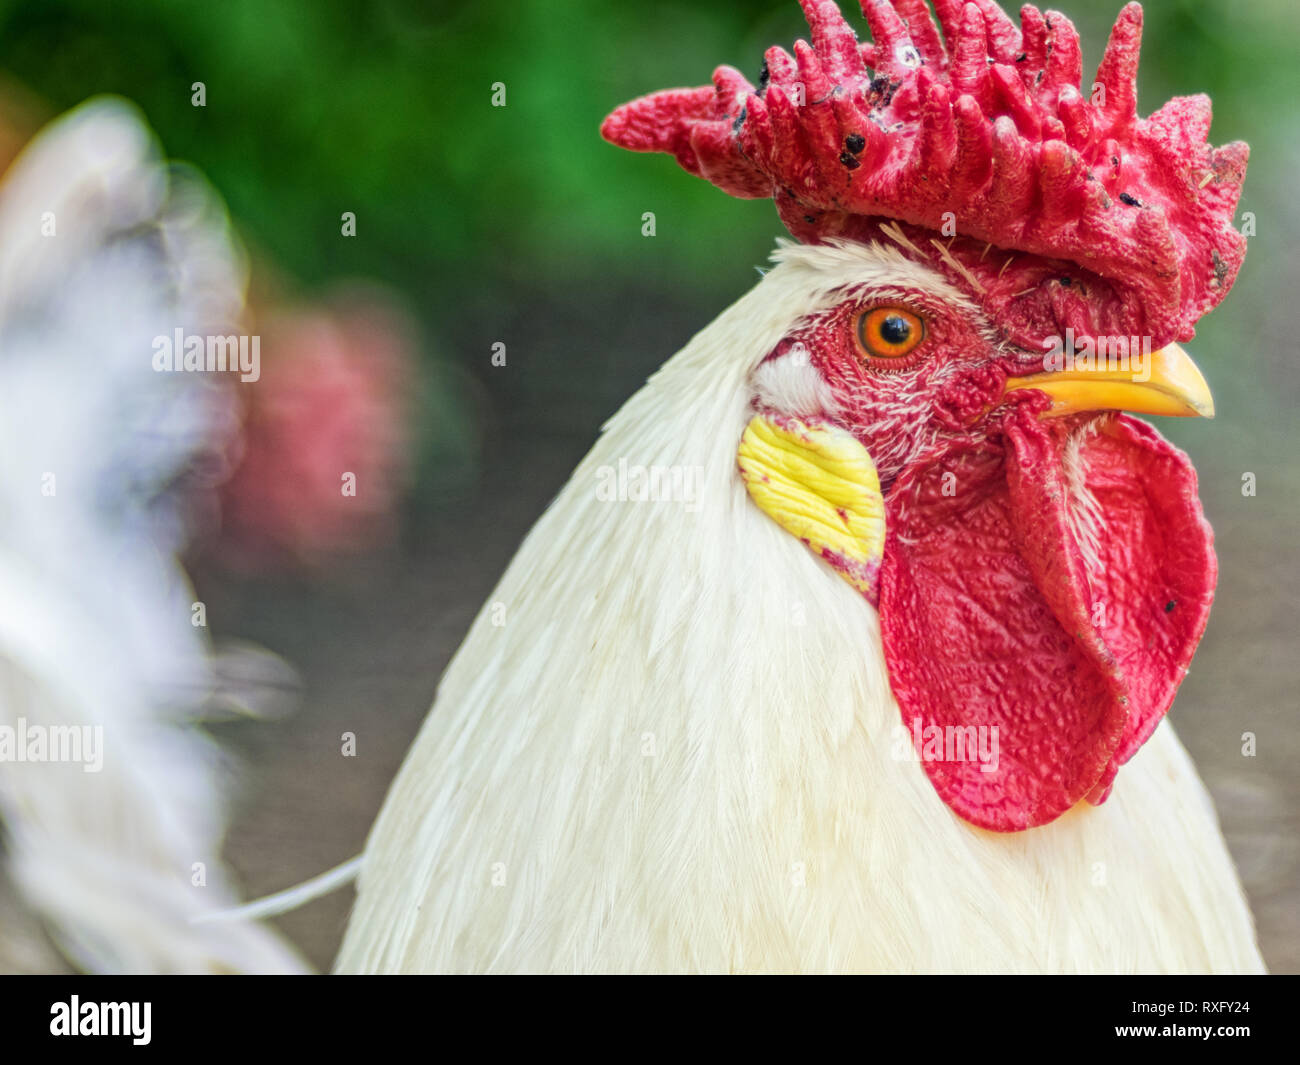 Hühner Portrait Nahaufnahme mit strukturiertem Hintergrund - Altglas Foto Stock Photo